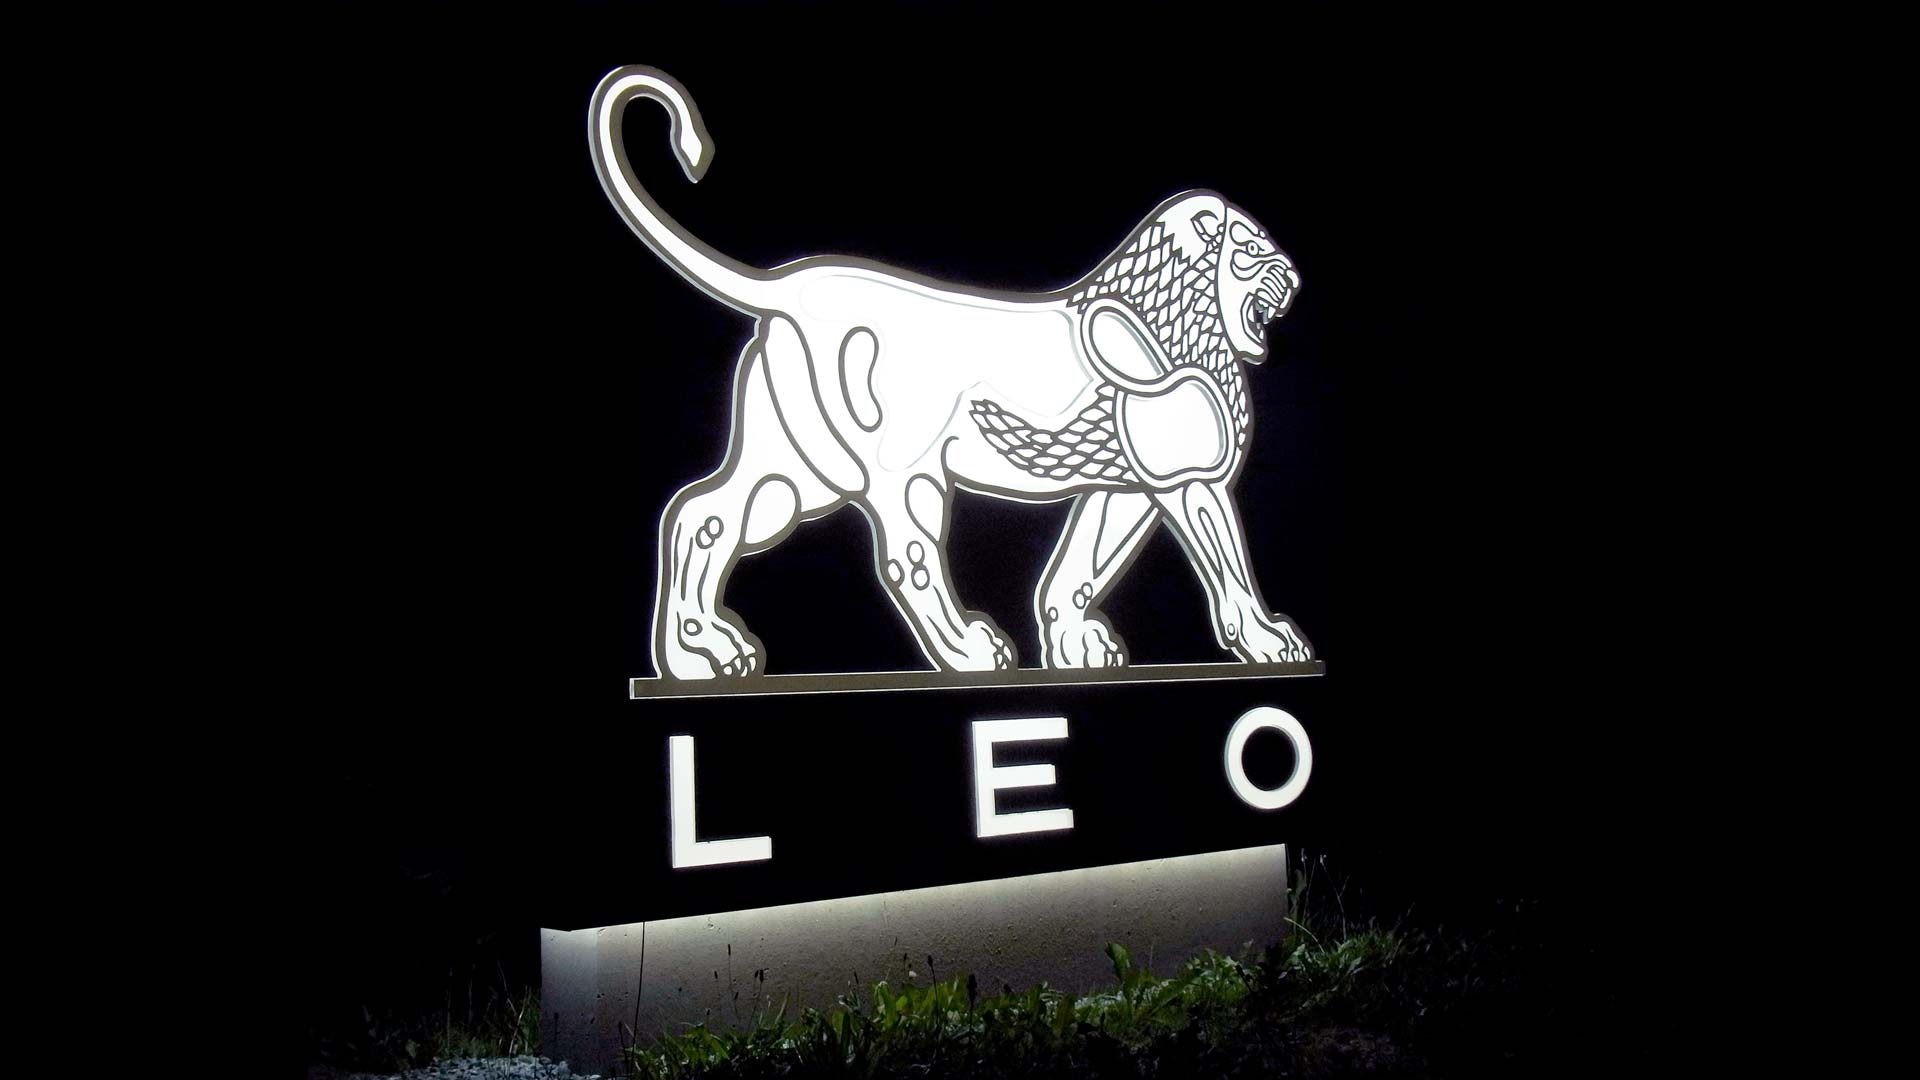 MAASS-Lichtplanung_Lichtwerbung für die LEO Pharma GmbH__MAASS-Leo-Pharma-001